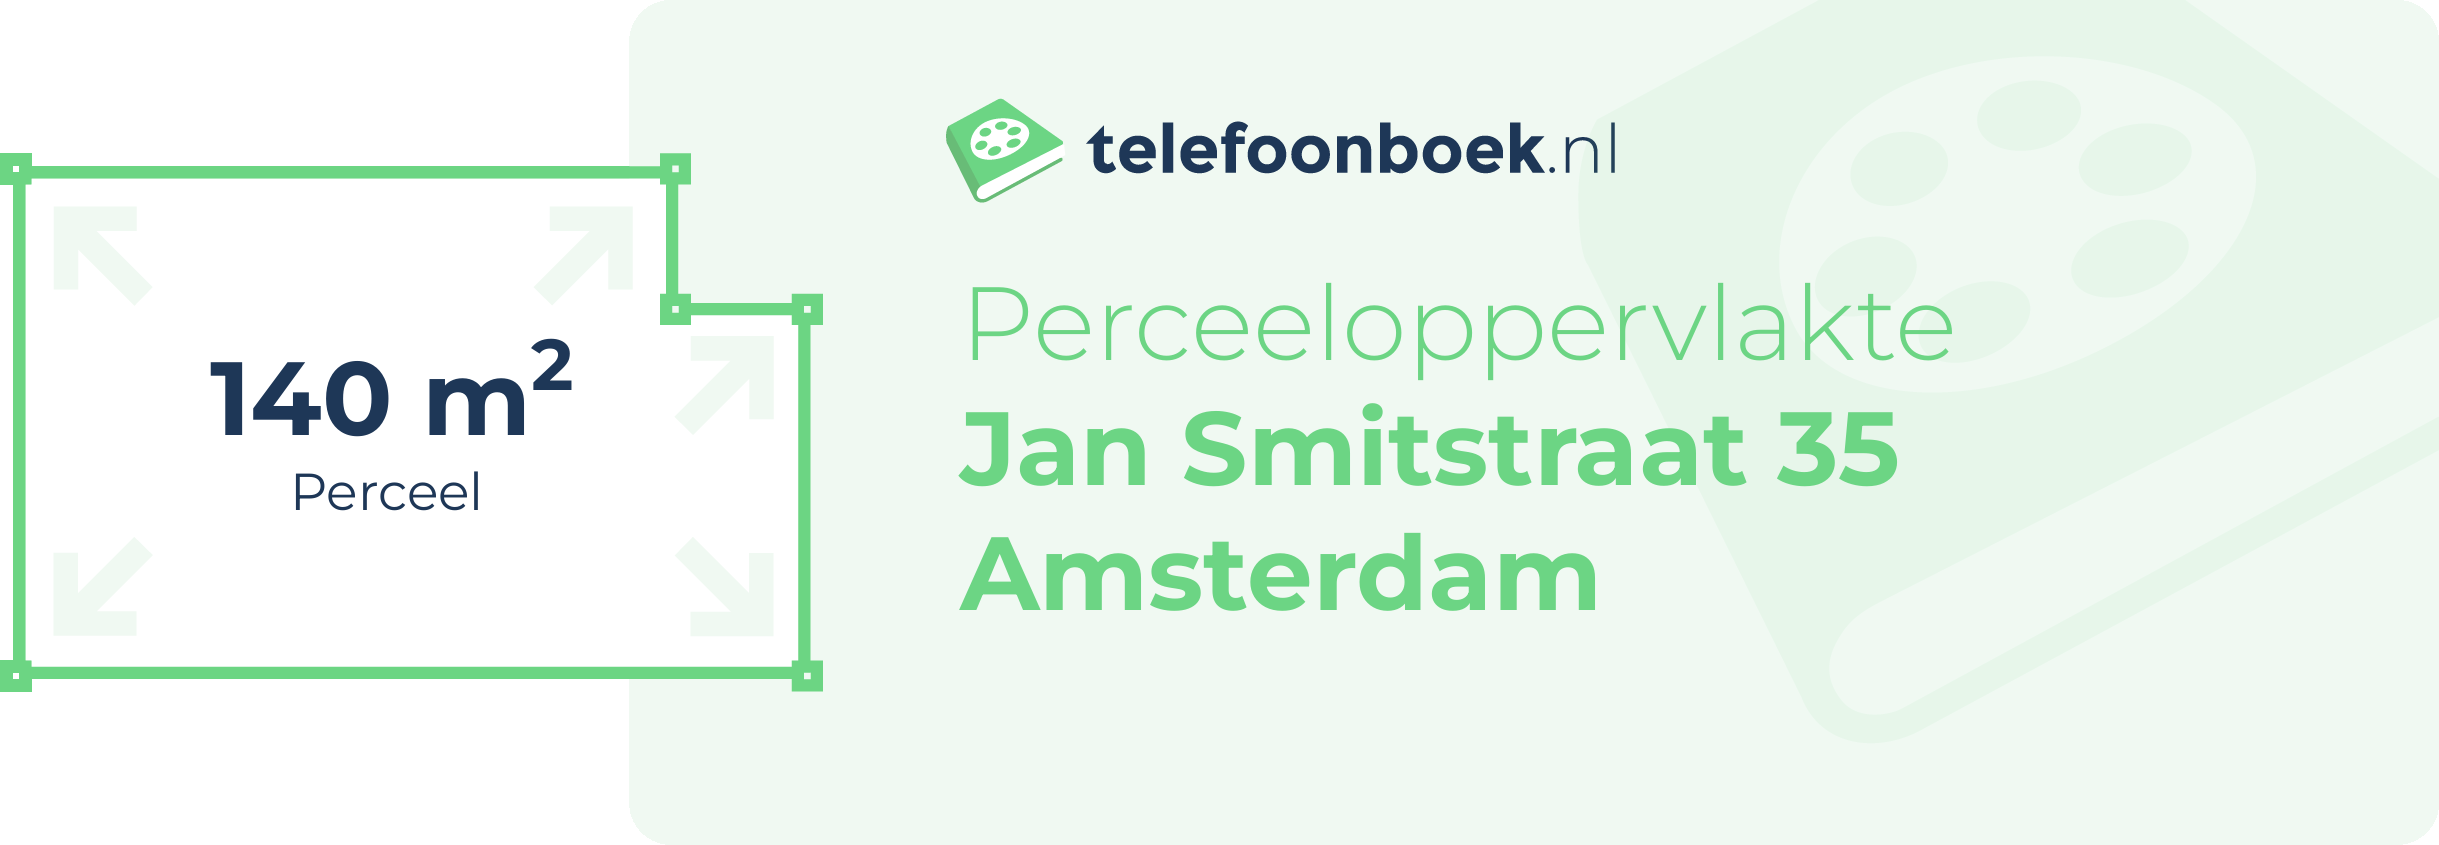 Perceeloppervlakte Jan Smitstraat 35 Amsterdam